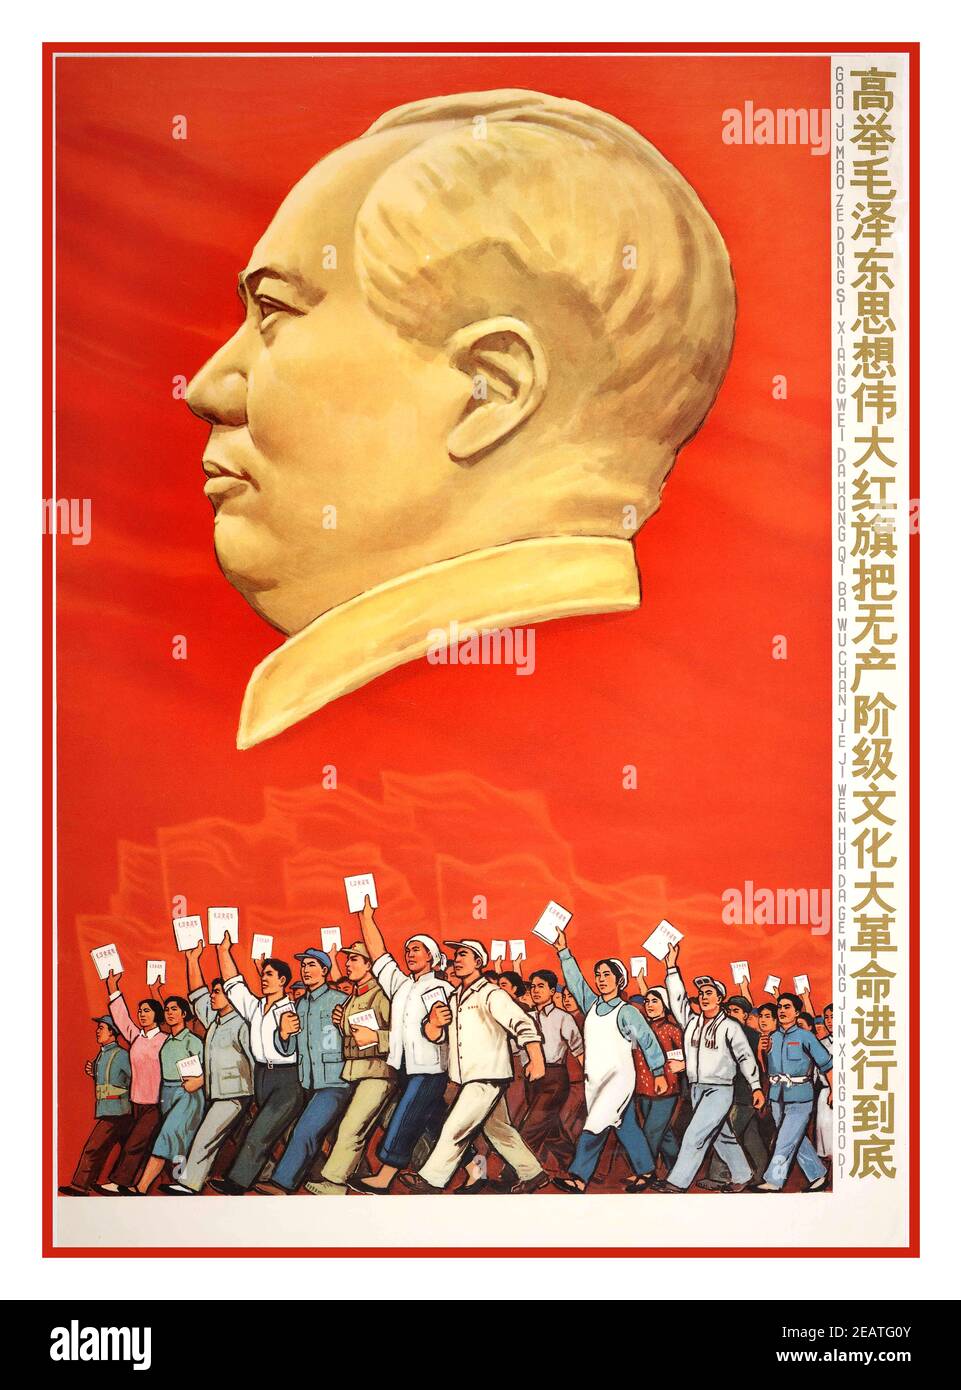 Póster de propaganda China vintage con un gráfico de perfil imponente del presidente Mao ‘la fuerza en el núcleo que conduce nuestra causa hacia adelante es el Partido Comunista Chino. La base teórica que guía nuestro pensamiento es EL CARTEL COMUNISTA CHINO del marxismo-leninismo. Póster chino, de 1967 años, en honor a Mao Tse-Tung (1898-1976) y su "pequeño Libro Rojo" ("Quotaciones y pensamientos del Presidente Mao"). Foto de stock